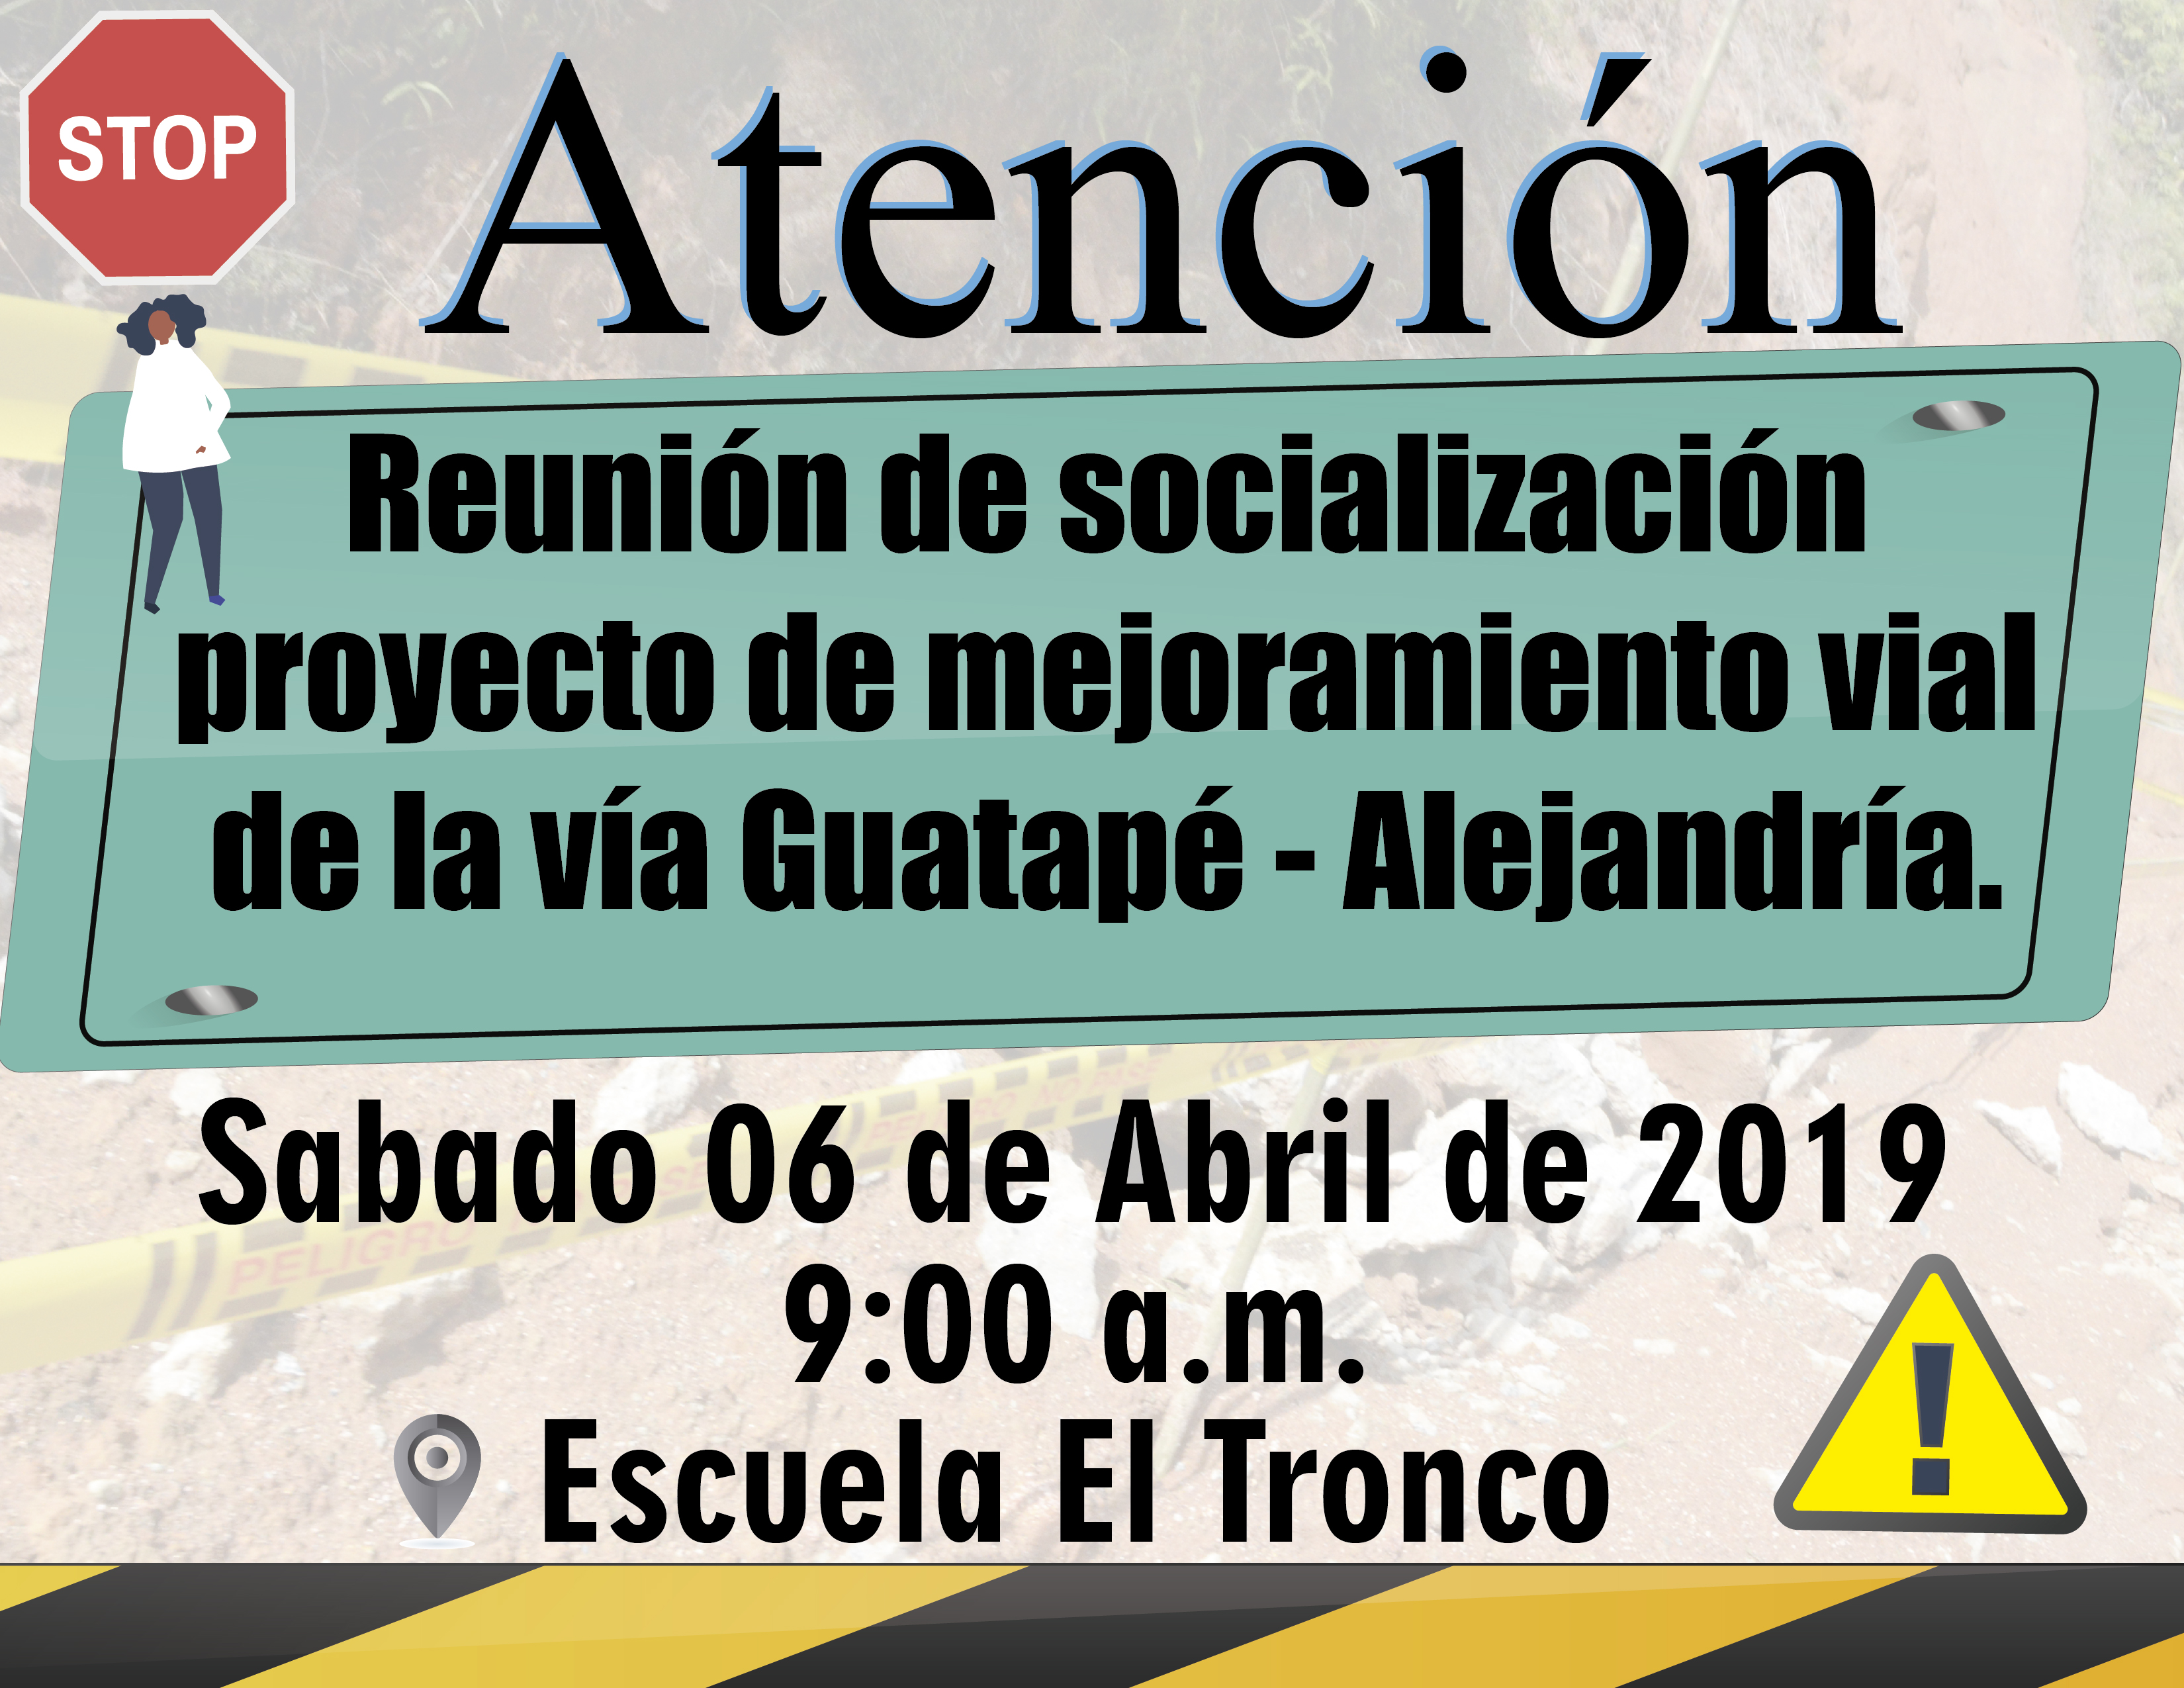 Reunión de socialización para inicio de mejoramiento  vial  de la vía Guatapé Alejandría.